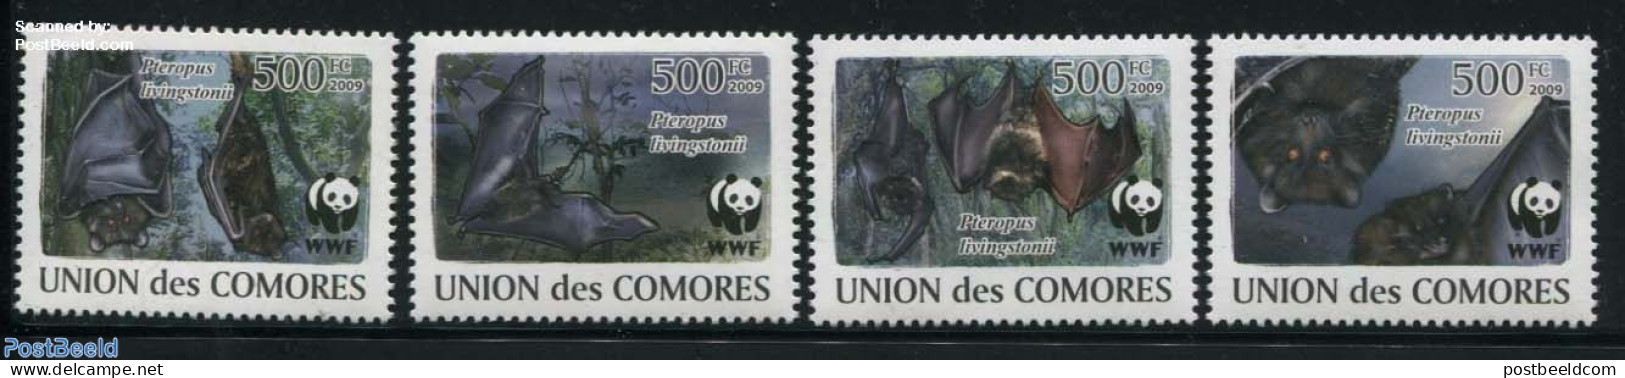 Comoros 2009 WWF, Bats 4v, Mint NH, Nature - Bats - World Wildlife Fund (WWF) - Comoros